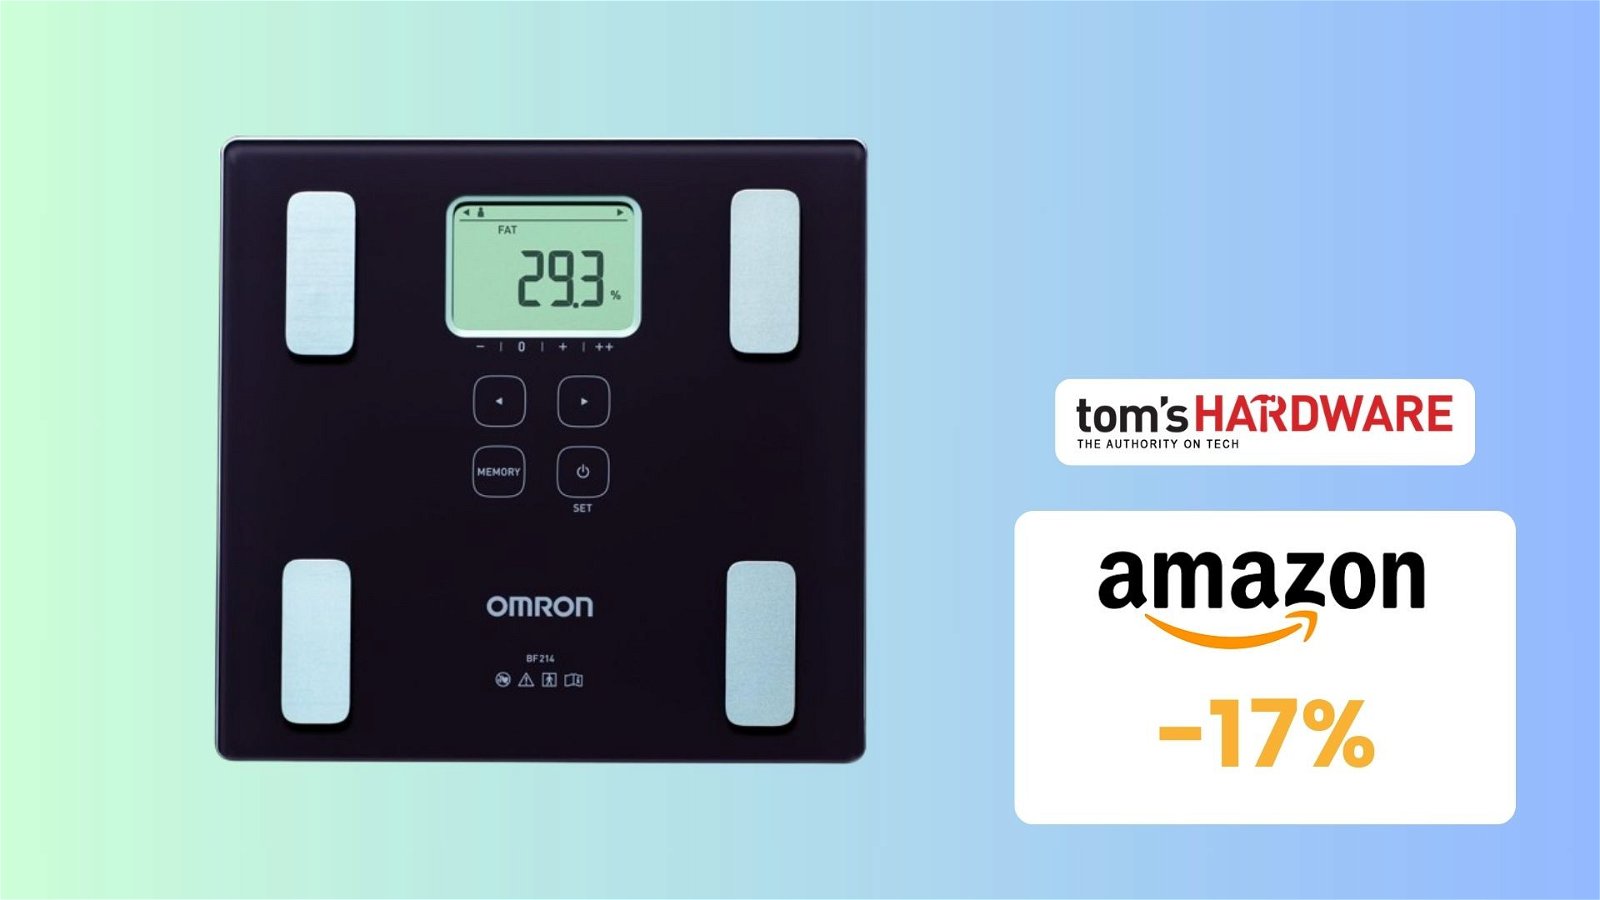 Immagine di Bilancia corporea OMRON a prezzo SHOCK su Amazon! (-17%)